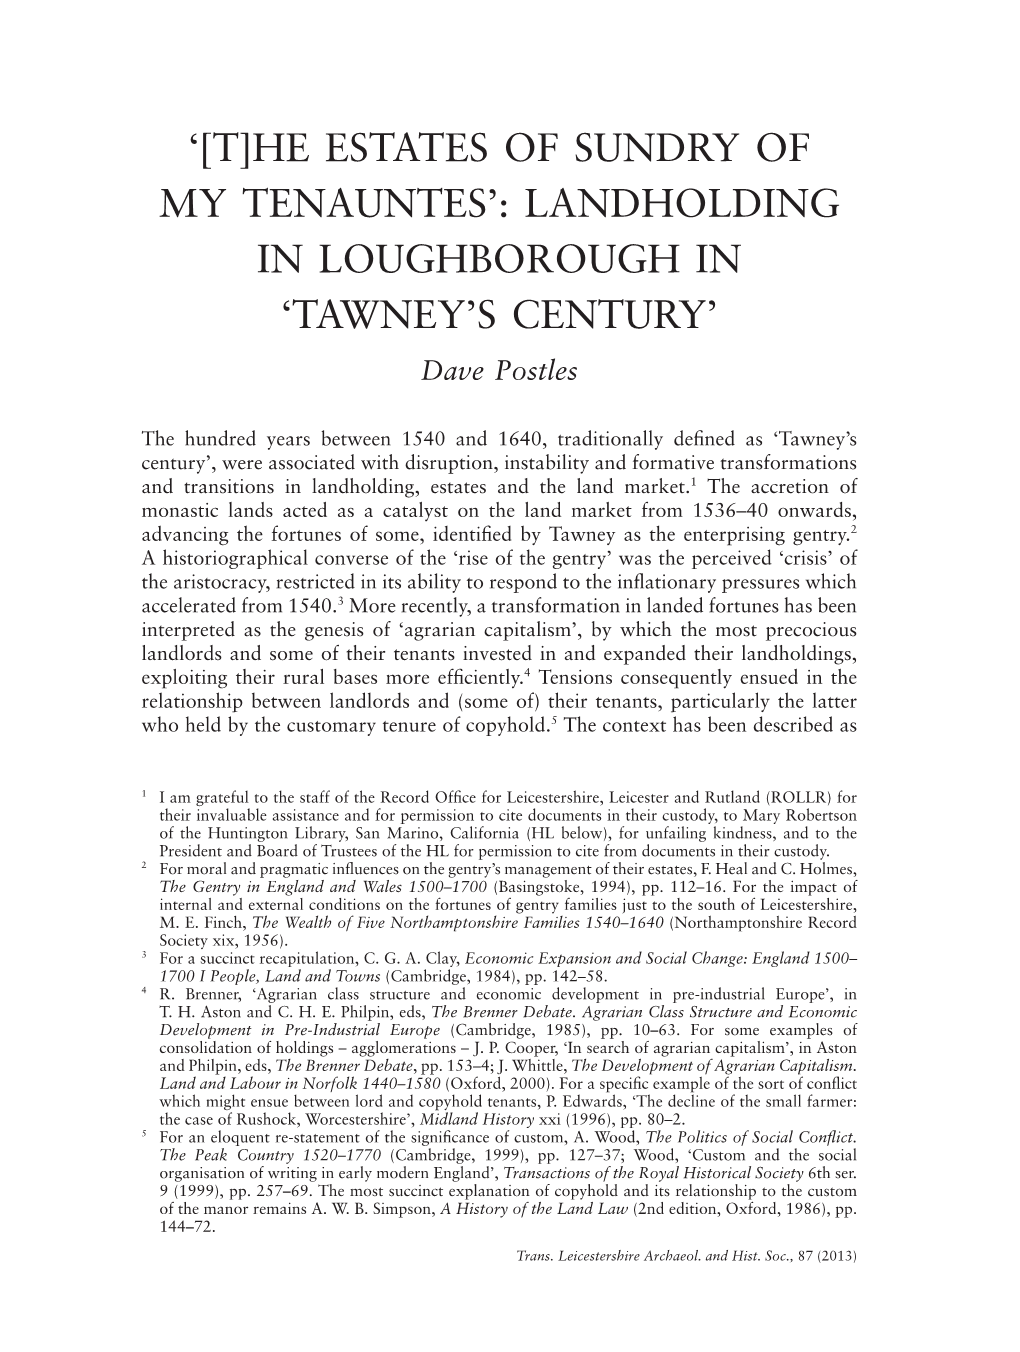 'Tawney's Century'